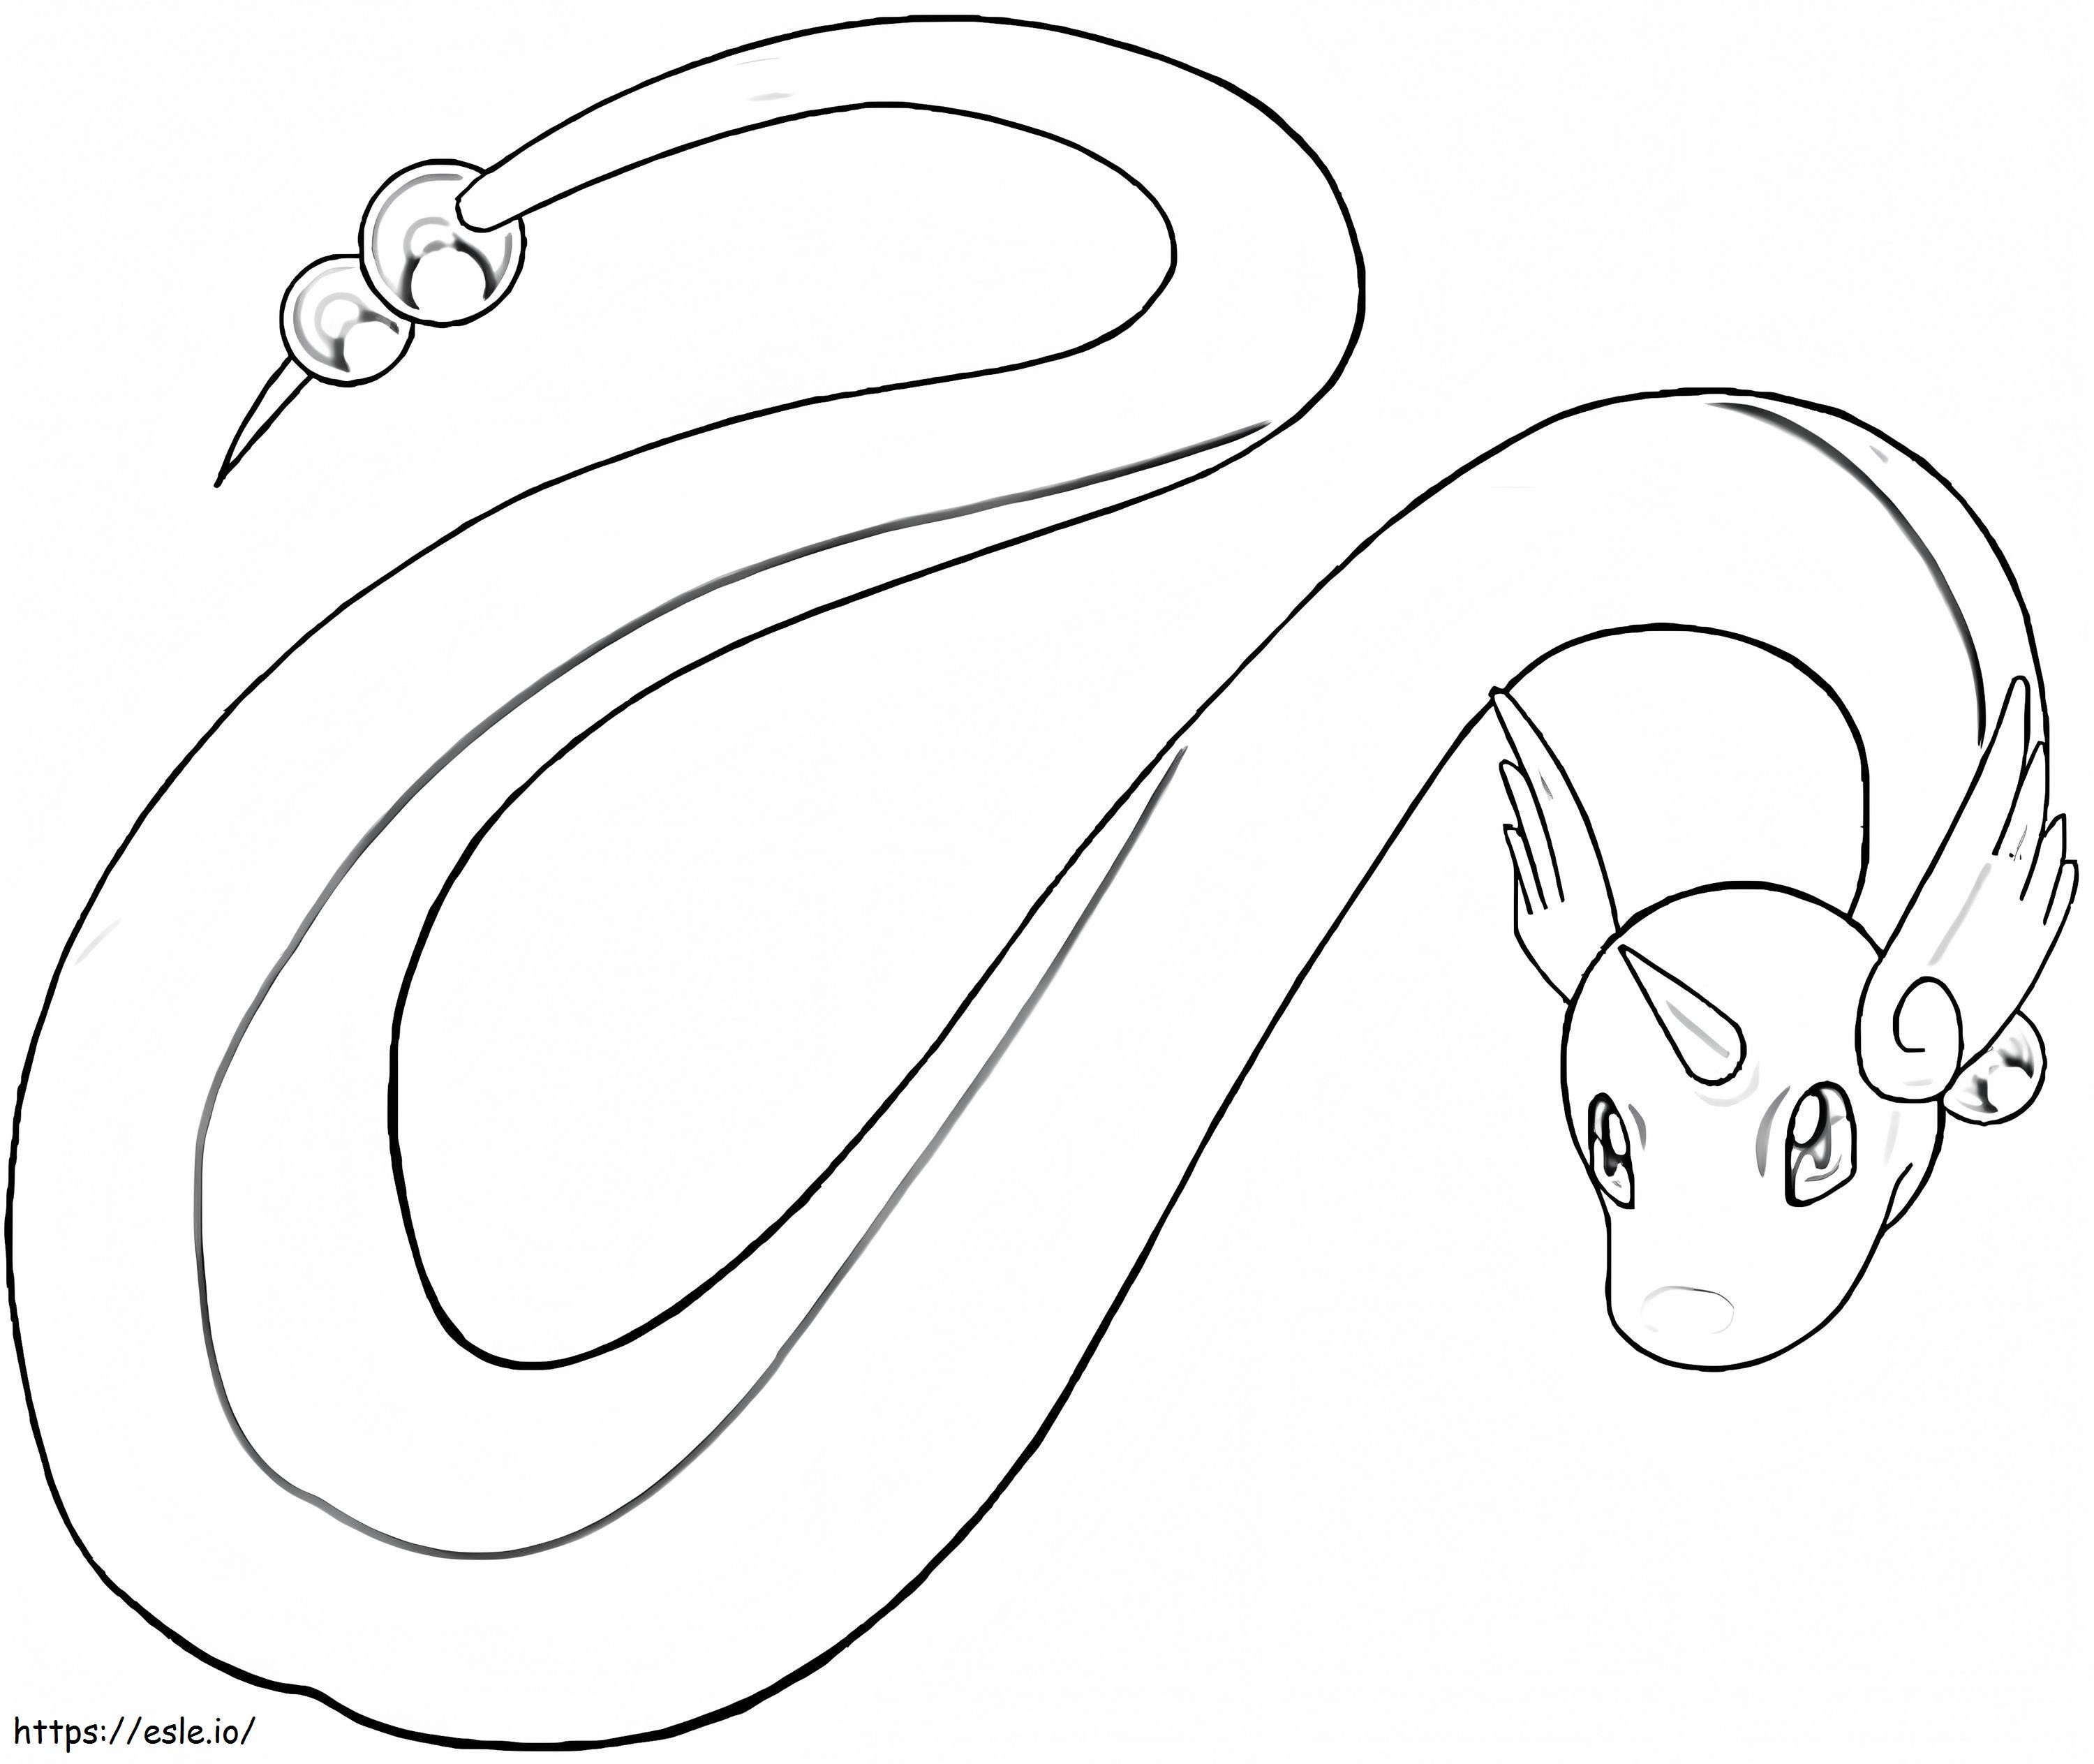 Coloriage Pokémon Dragonair gratuit à imprimer dessin